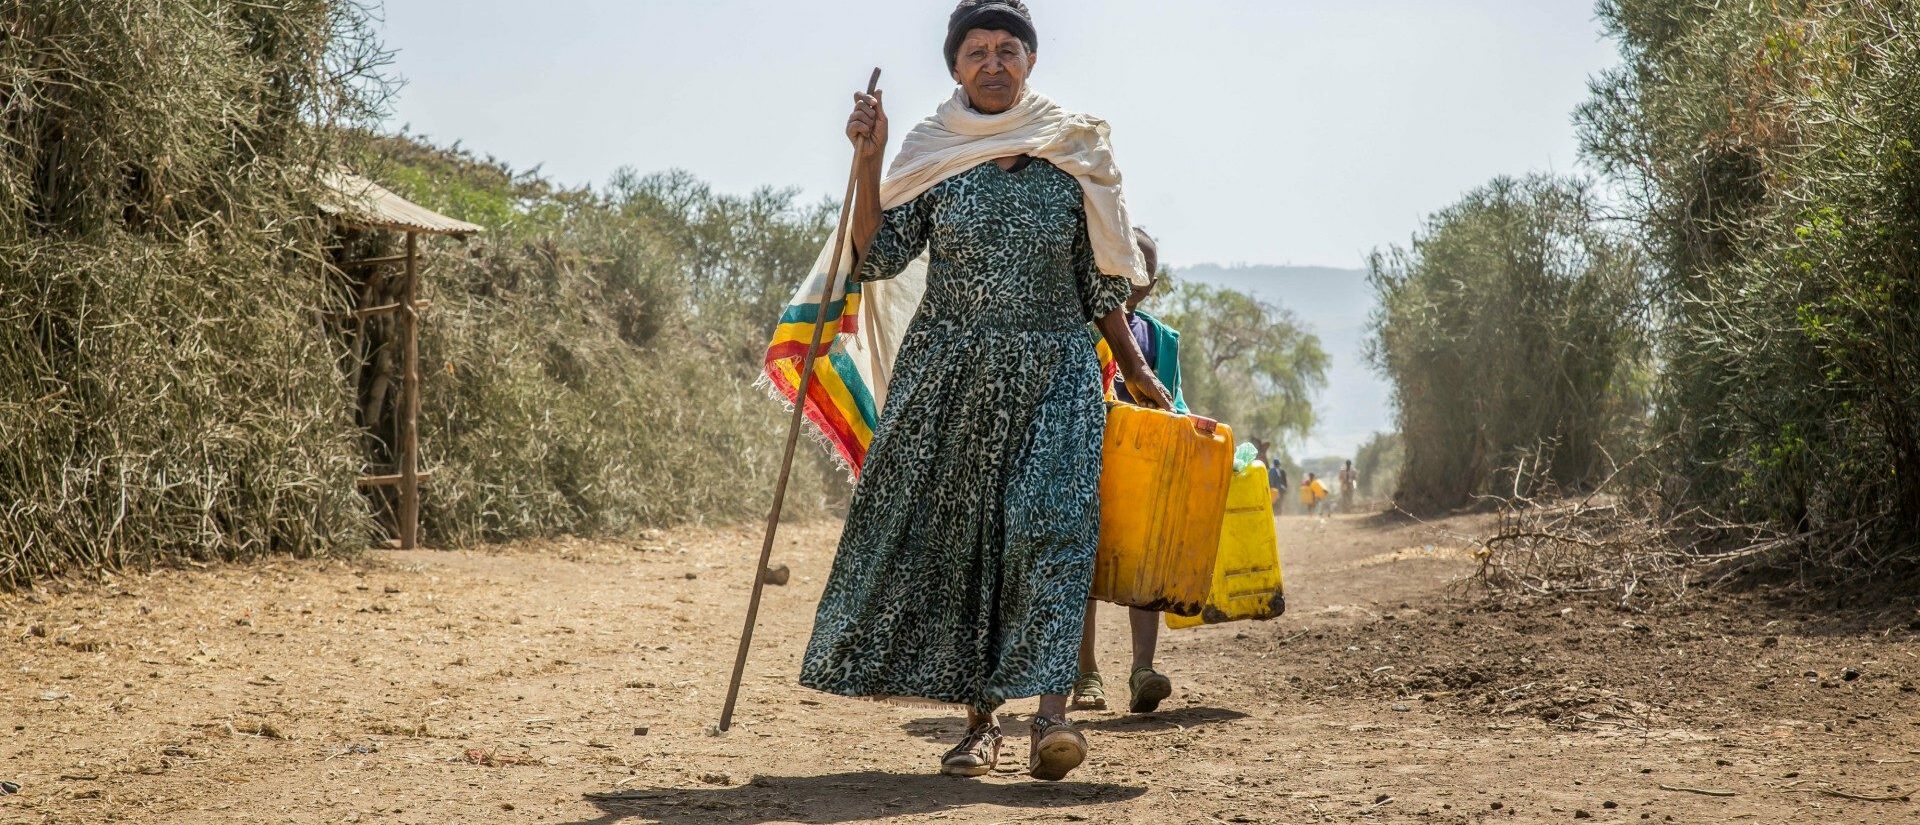 Les réfugiés climatiques seront certainement de plus en plus nombreux | photo d'illustration | © UNICEF Ethiopia/Flickr/CC BY-NC-ND 2.0